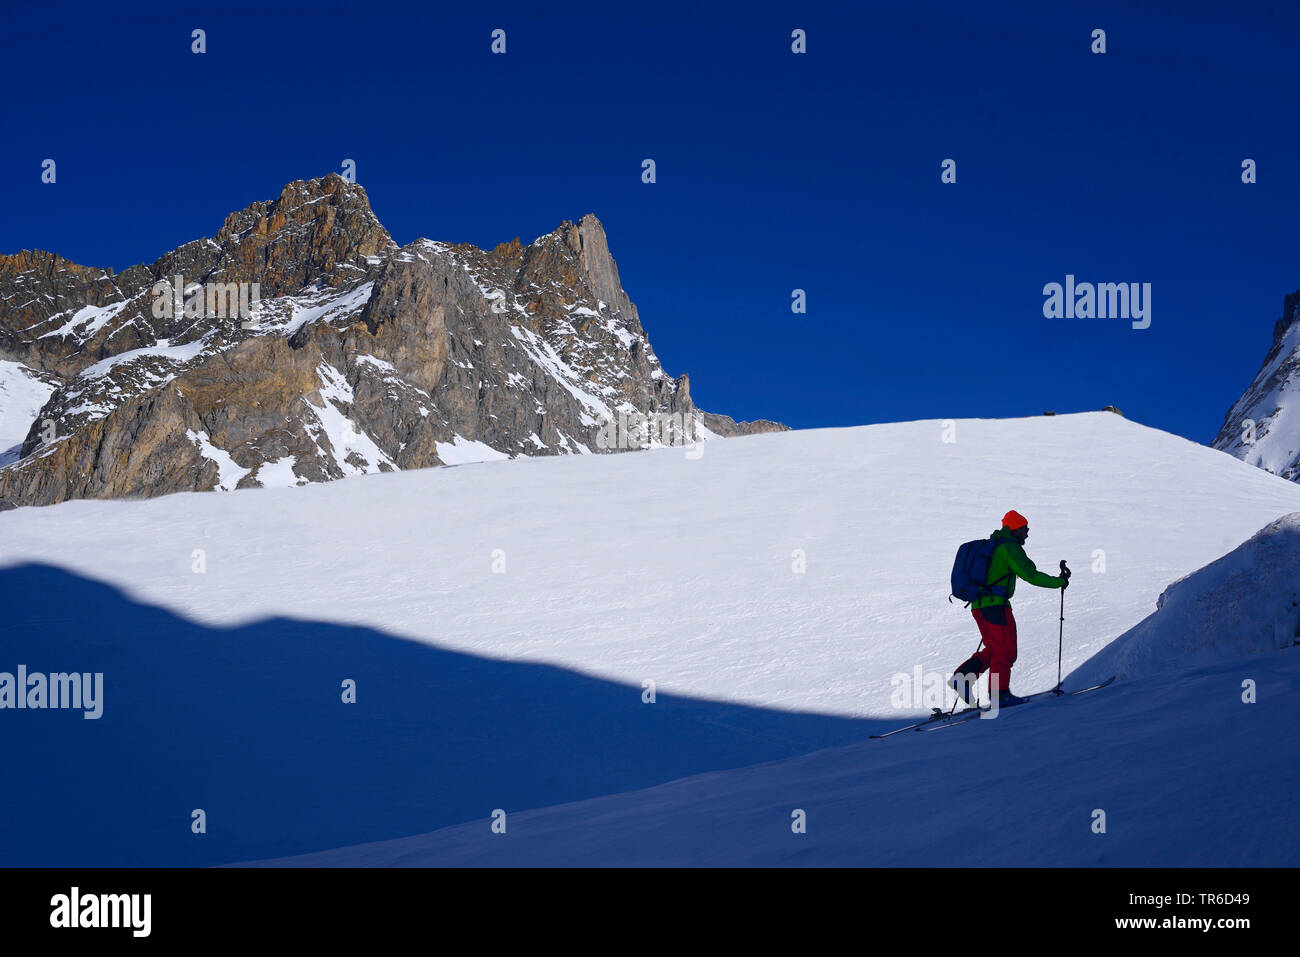 Ski touring in snowy mountain scenery, France, Savoie, Pralognan Stock Photo